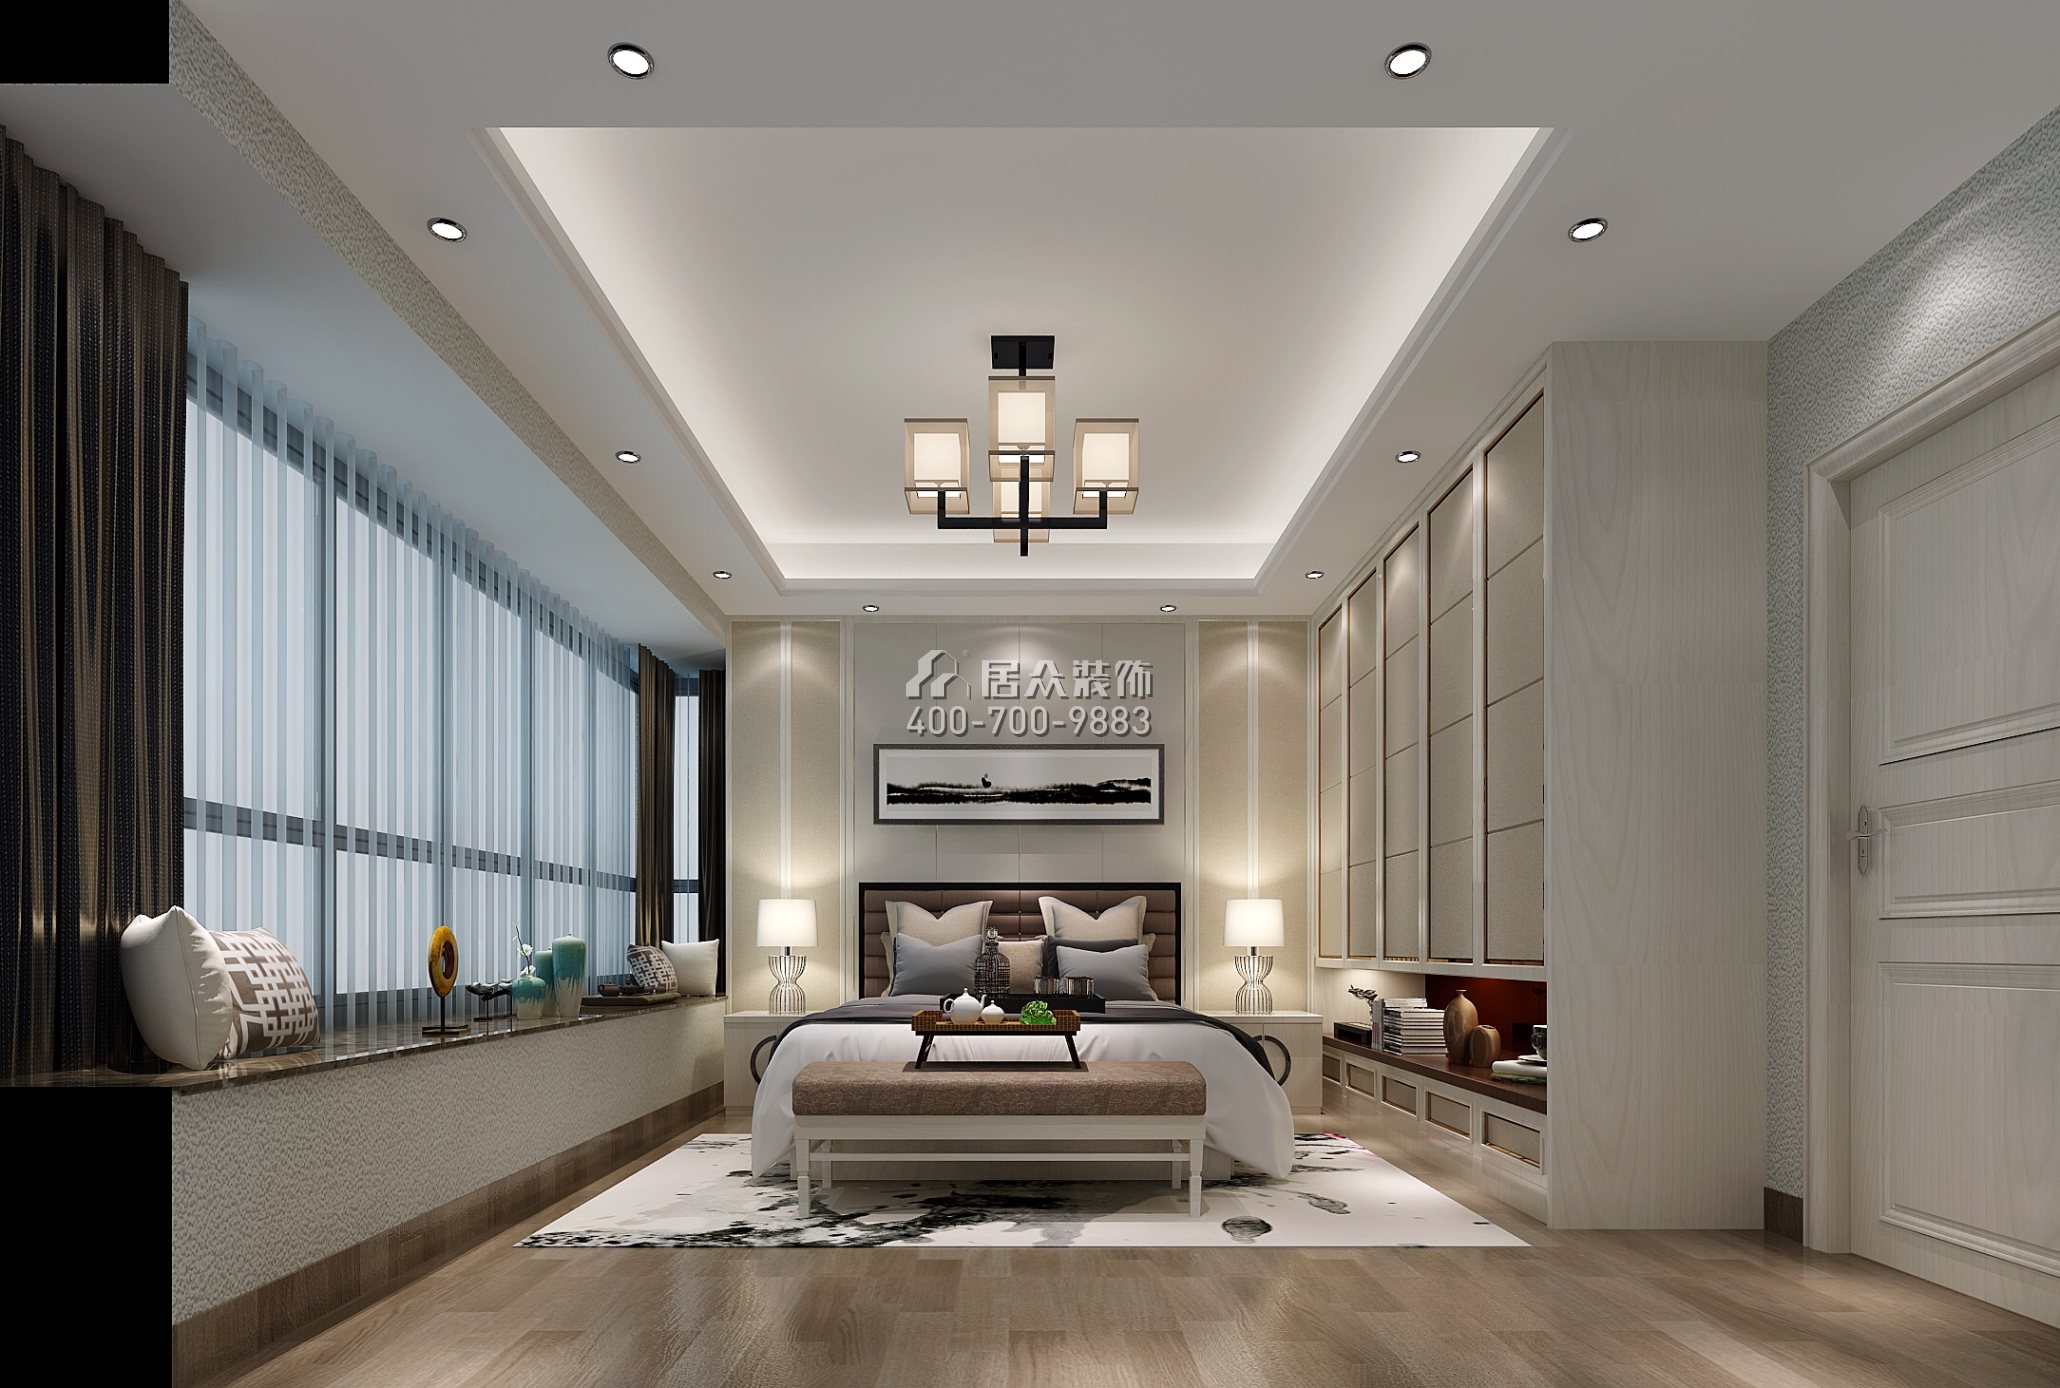 嘉都匯120平方米新古典風格平層戶型臥室裝修效果圖